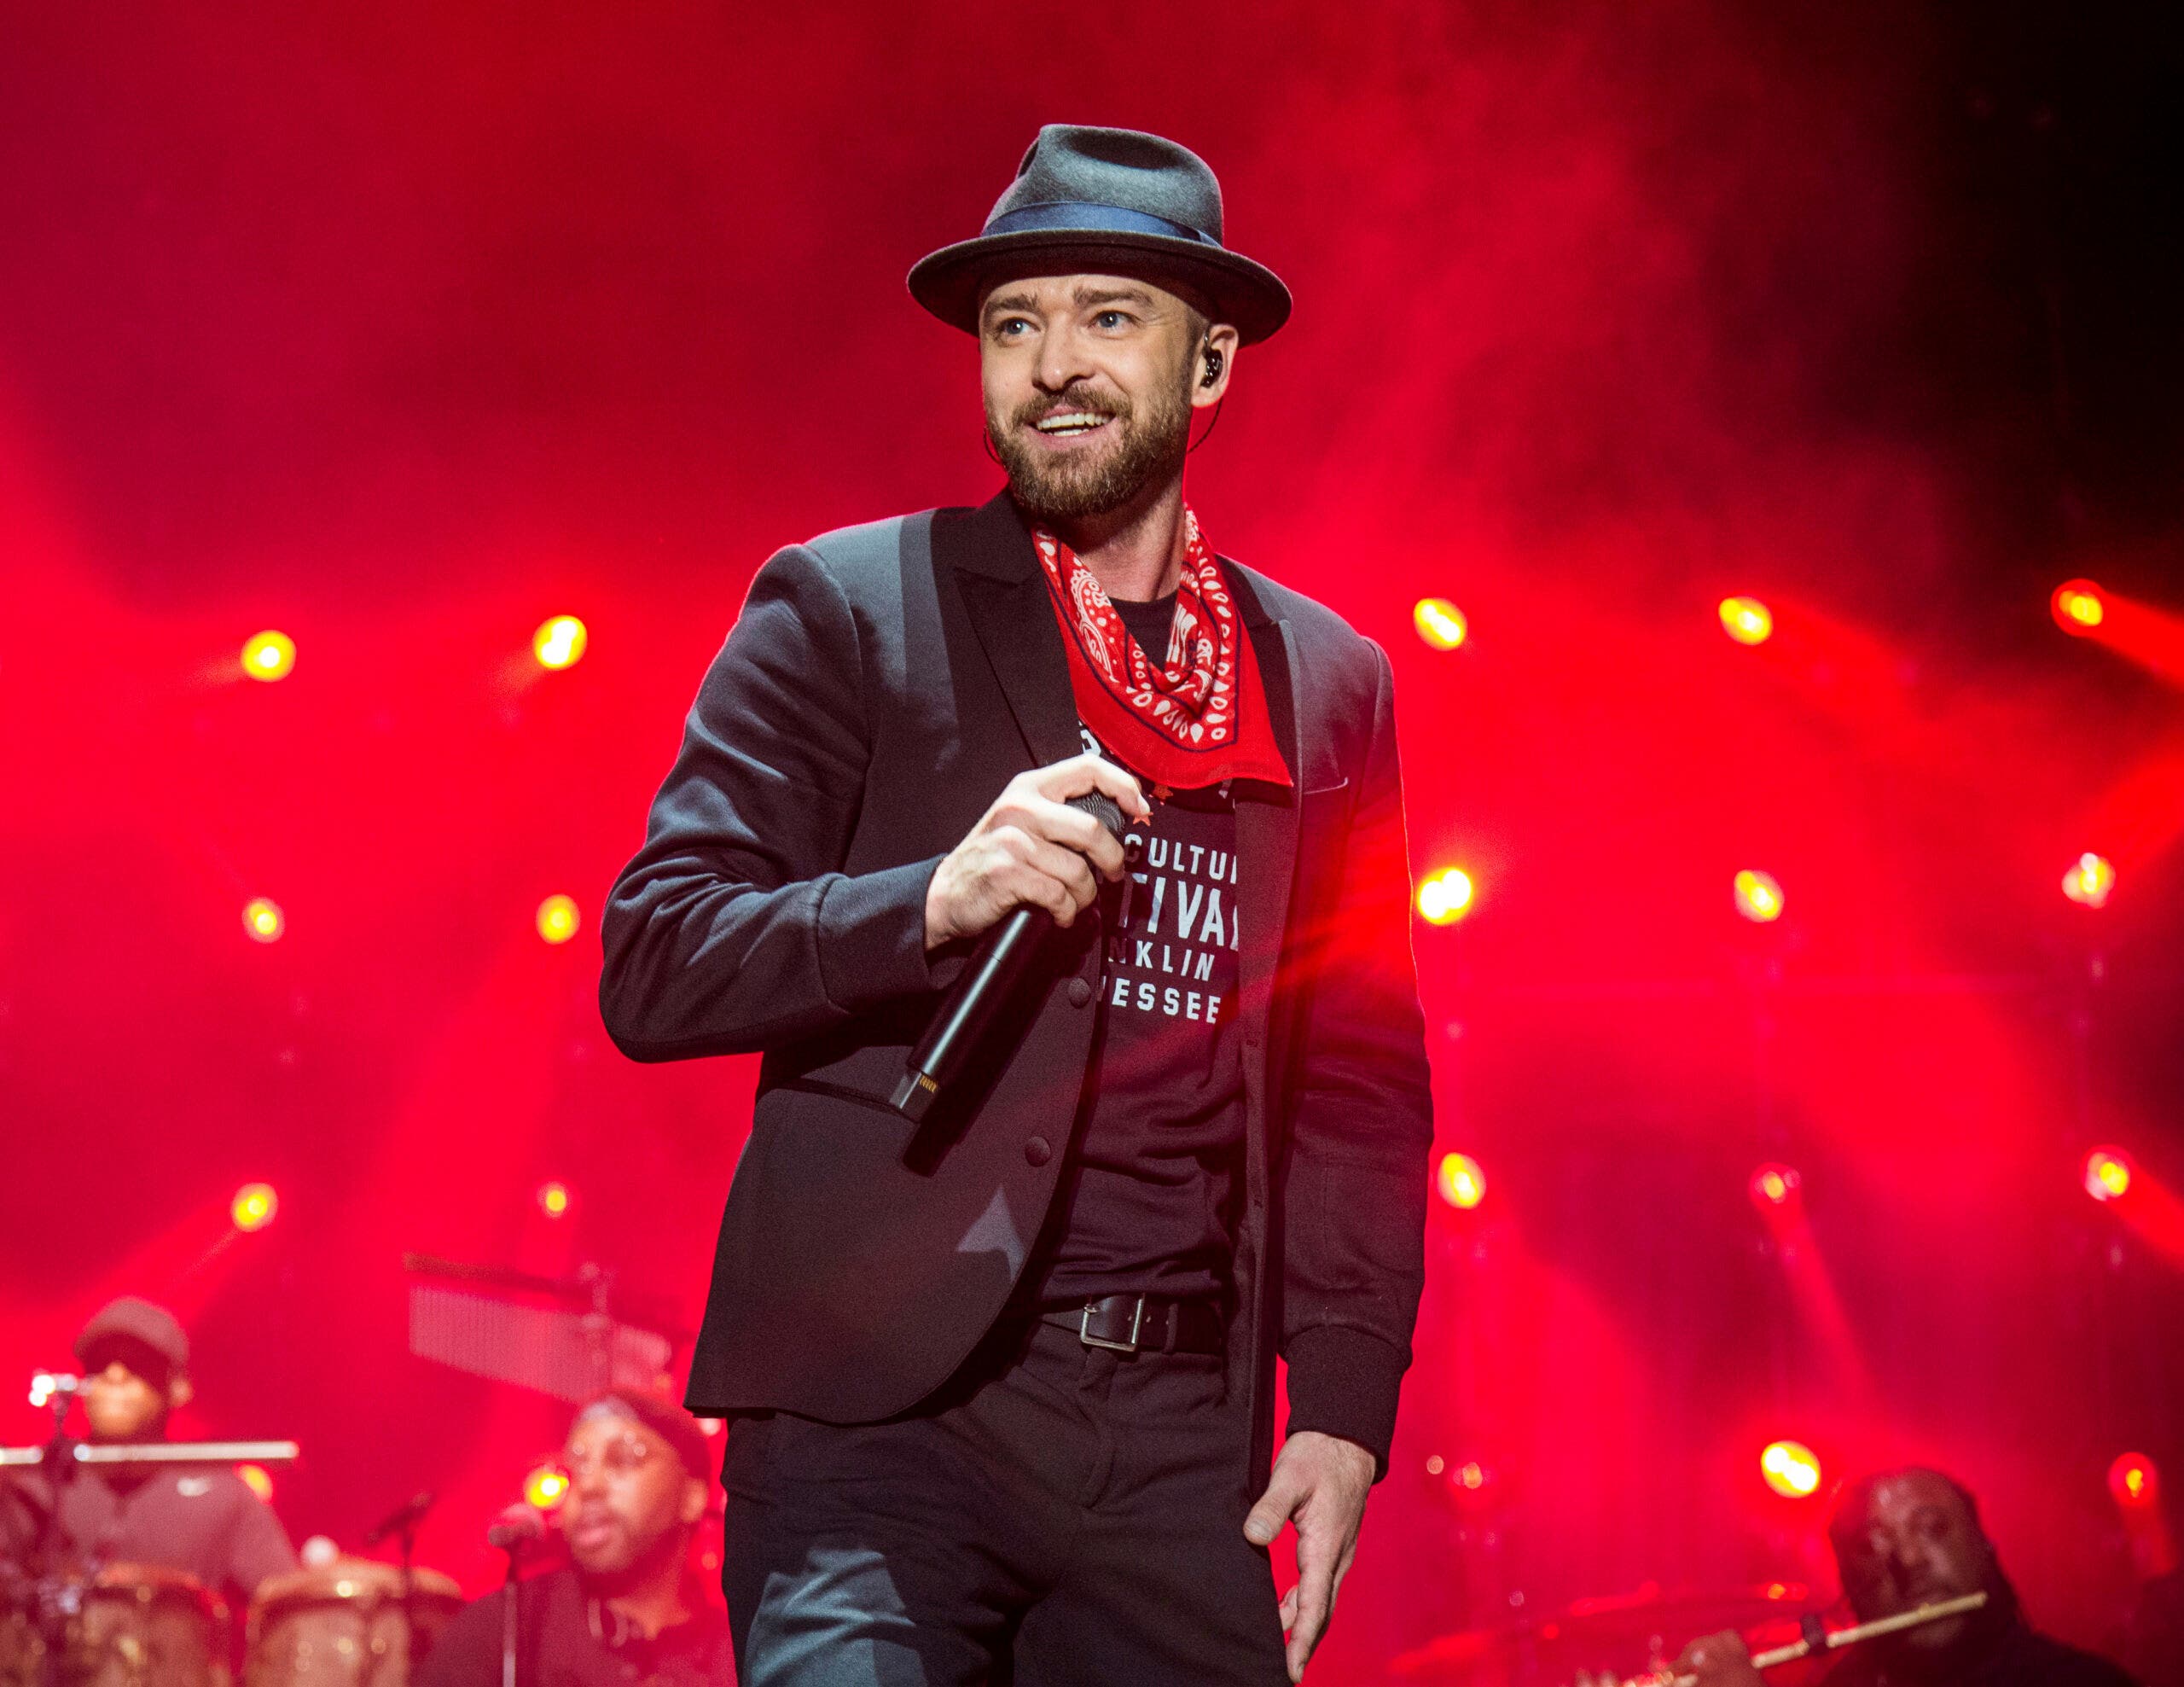 Puntos clave sobre la vida y carrera de Justin Timberlake